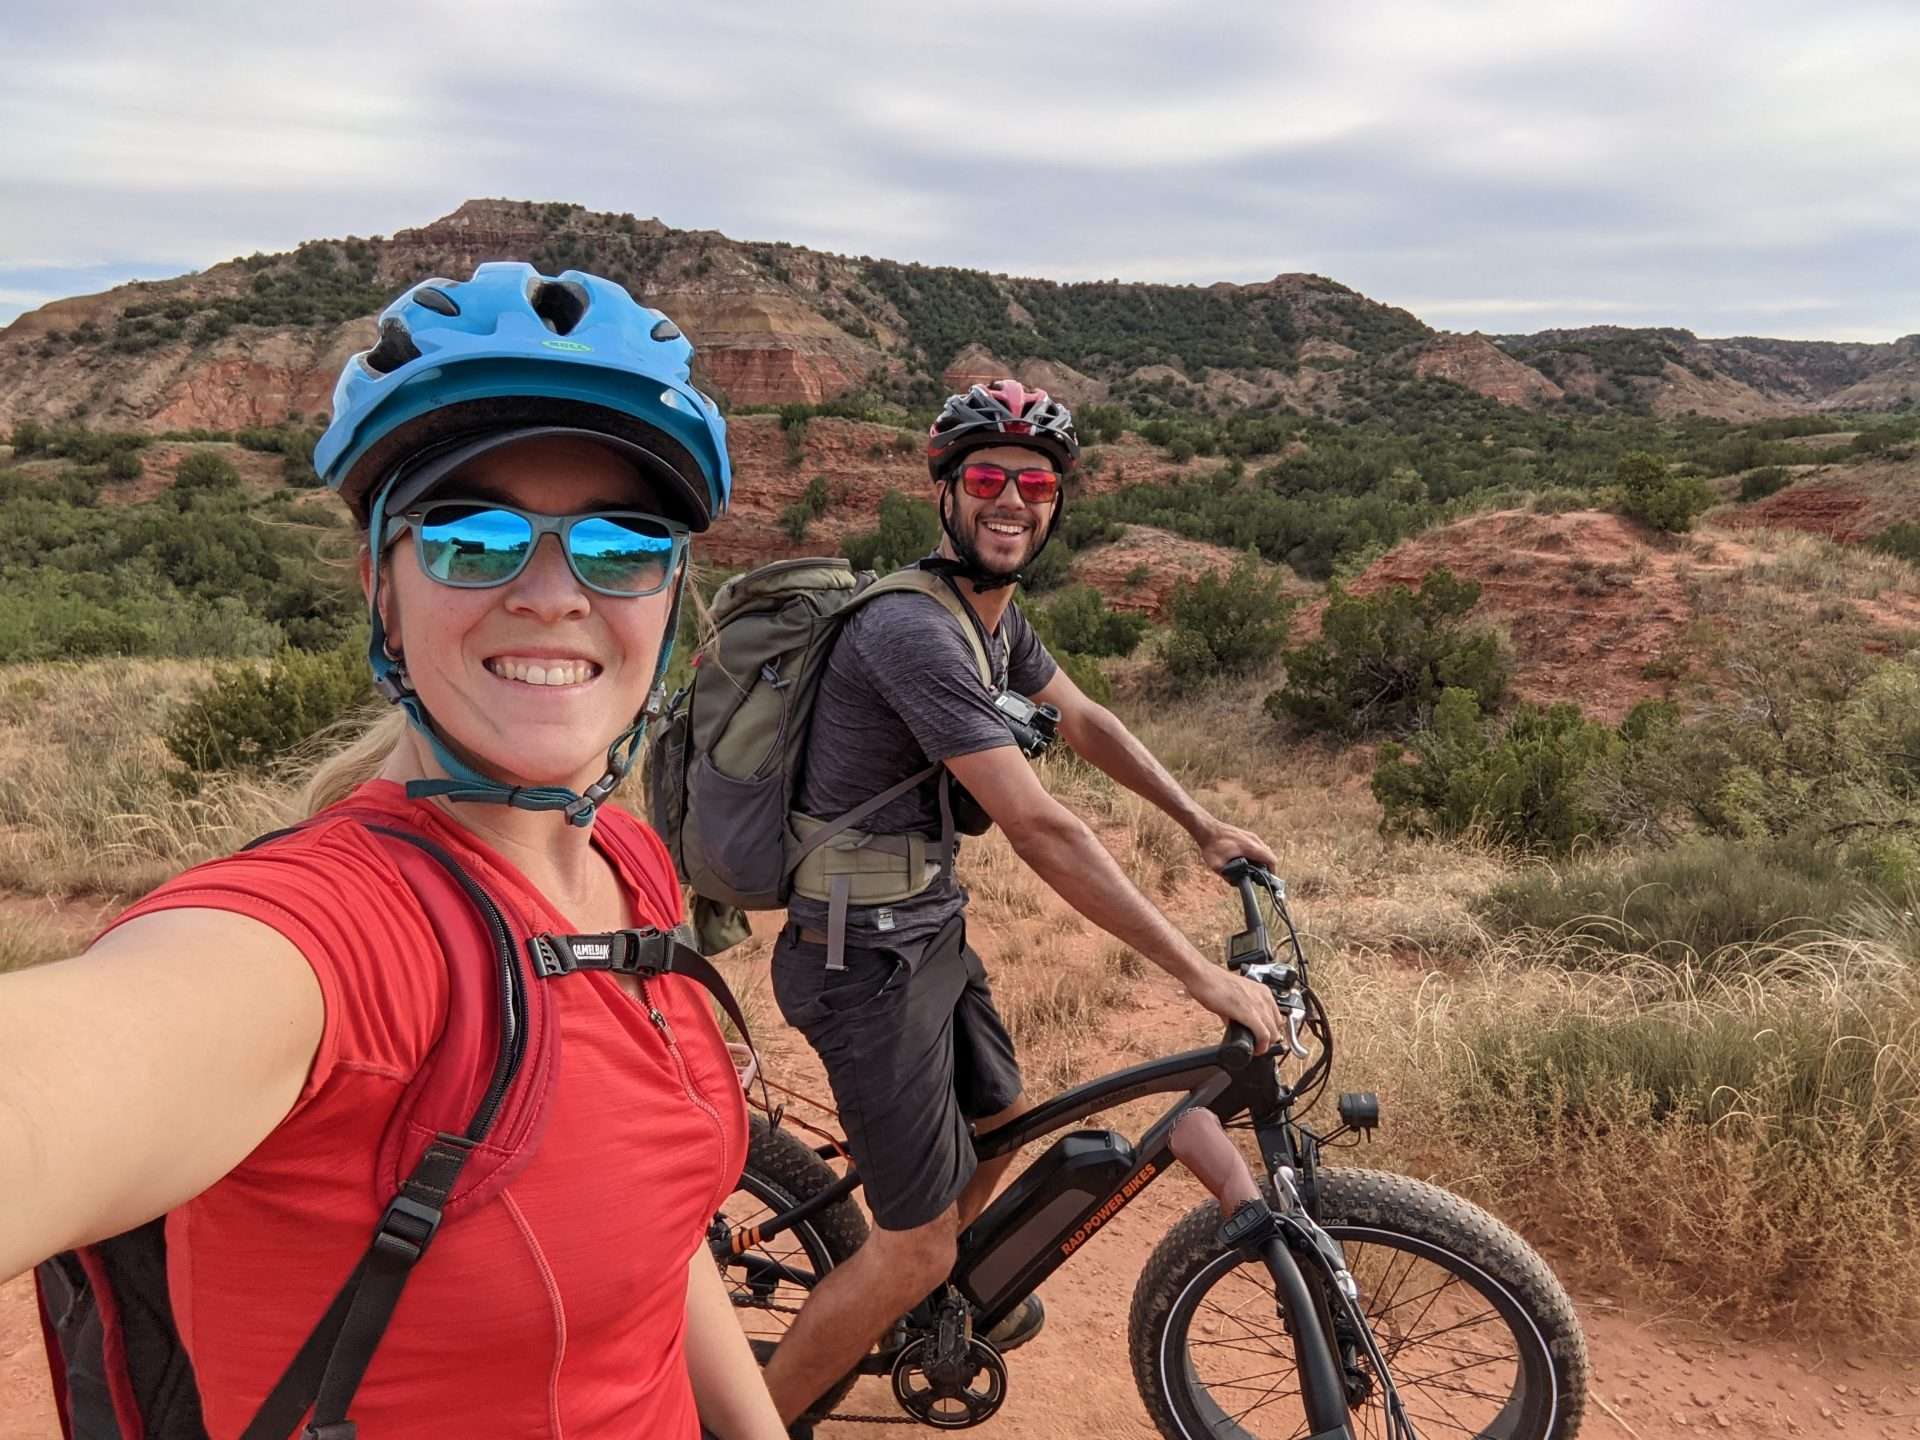 Mortons on the Move biking in desert 